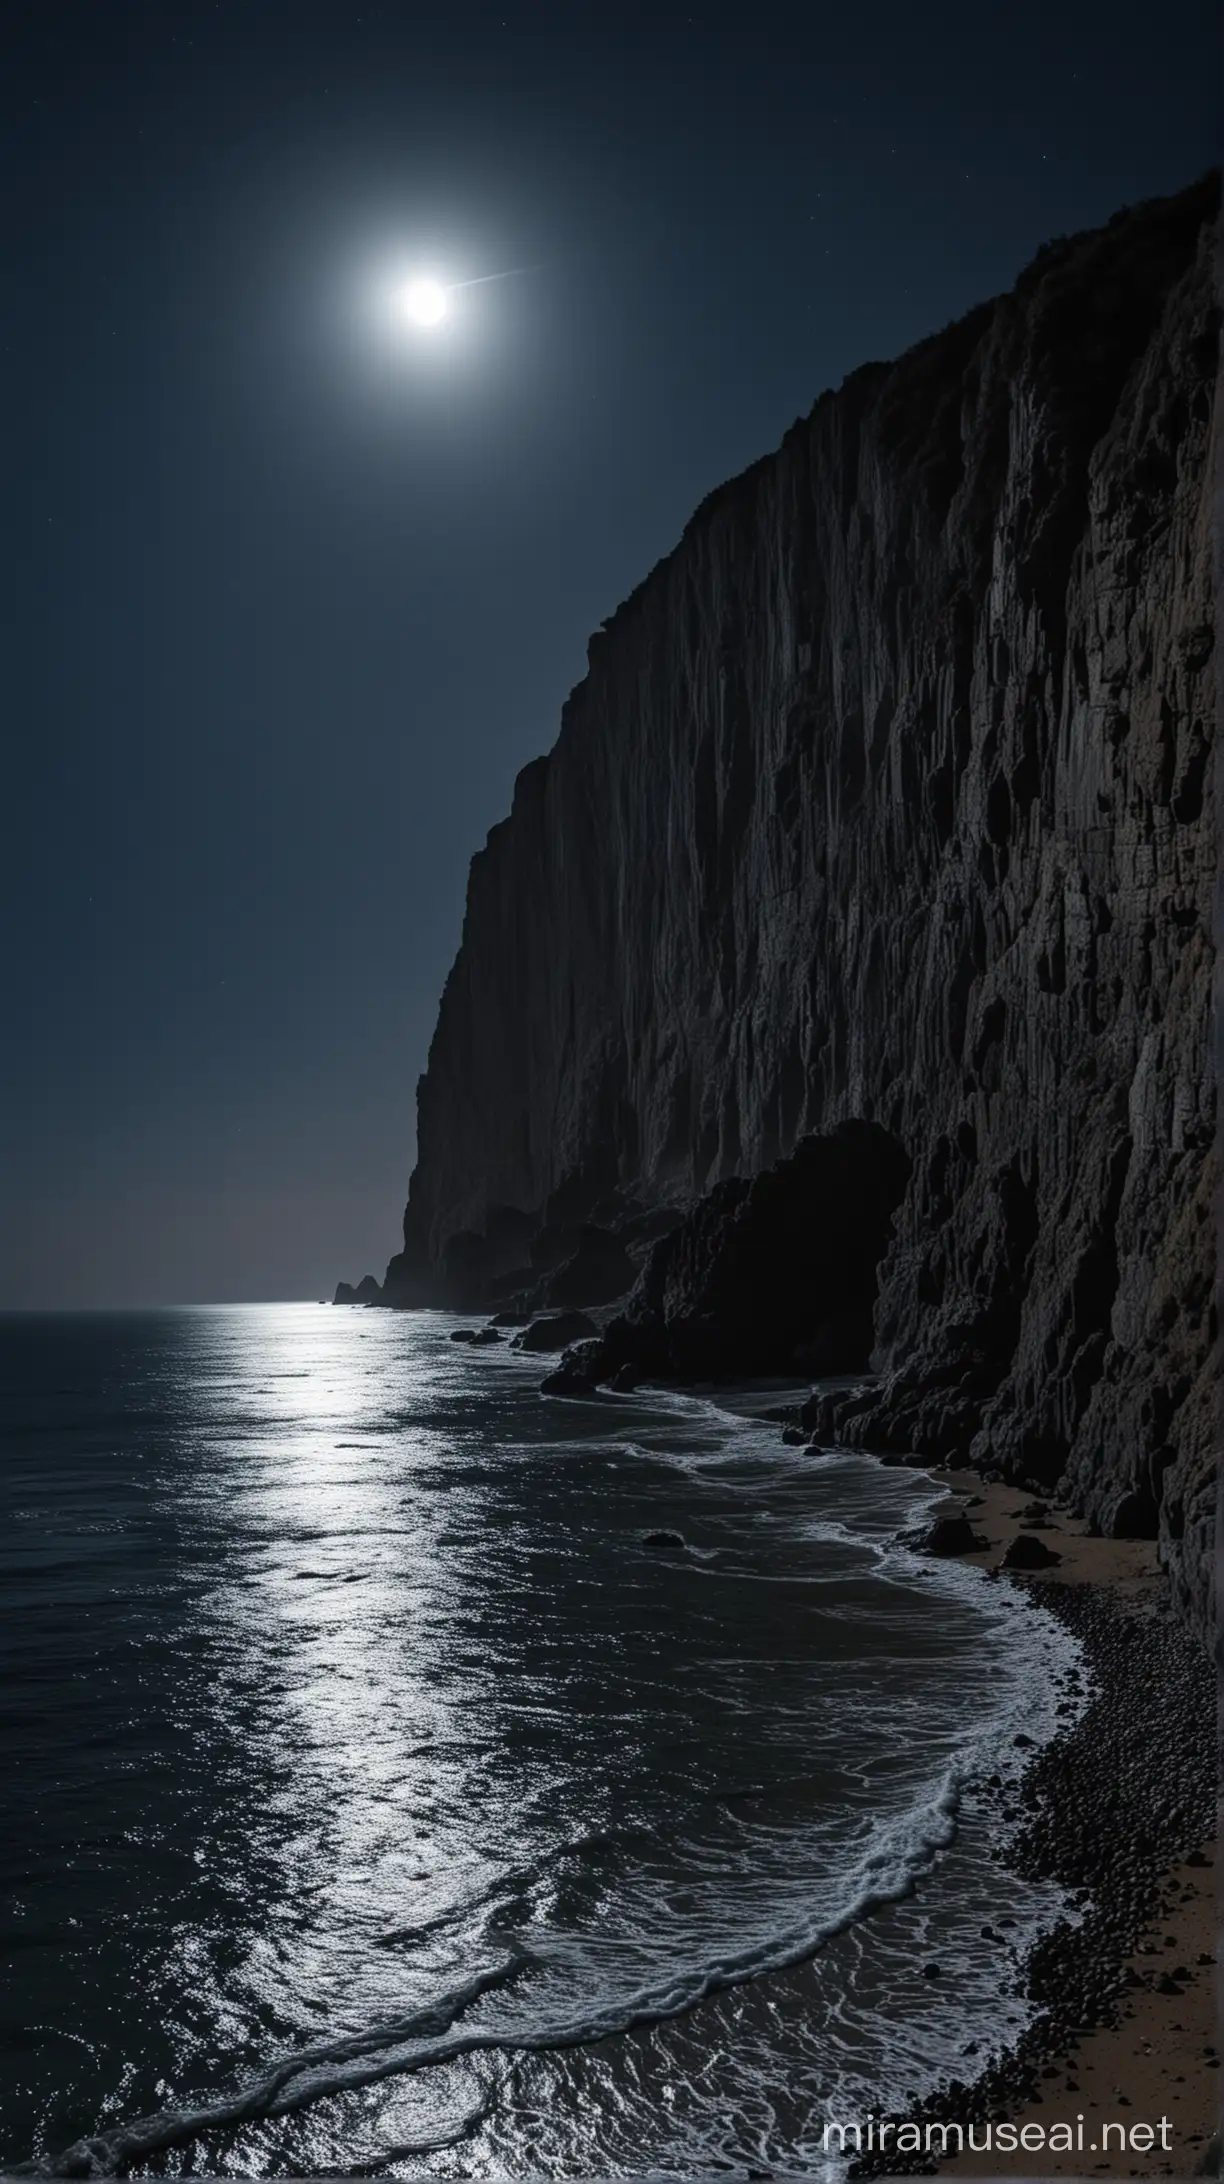 Обрыв берега, ночь, темно, ярко светит луна, 